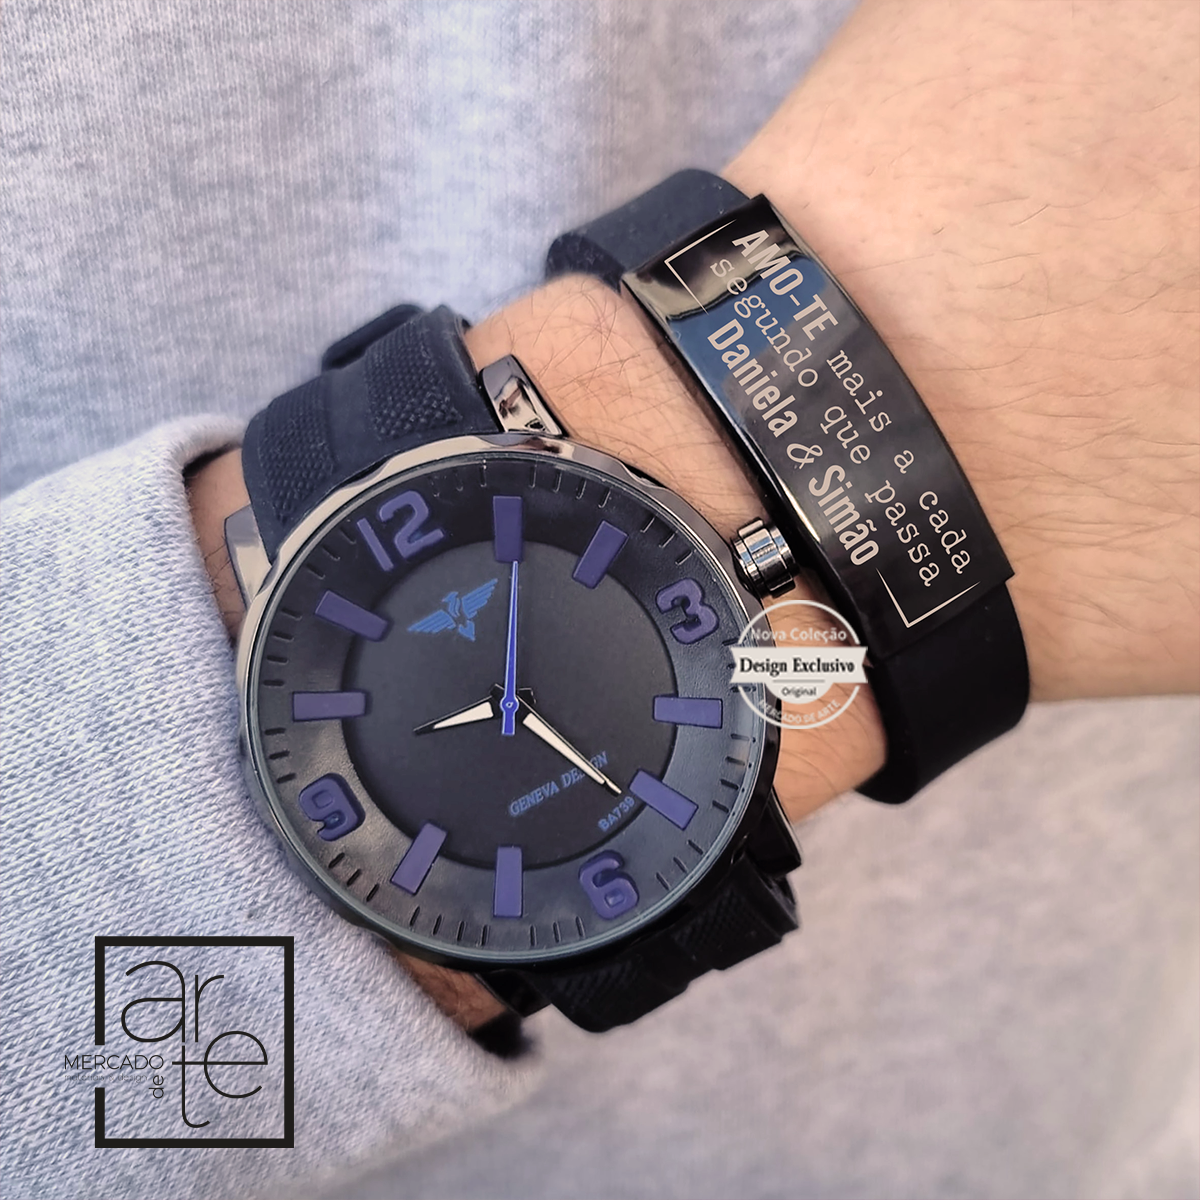 Novidade!   Conjunto relógio com bracelete em silicone com pulseira em aço inóx e bracelete em silicone. Personalize a pulseira com a mensagem que desejar. 